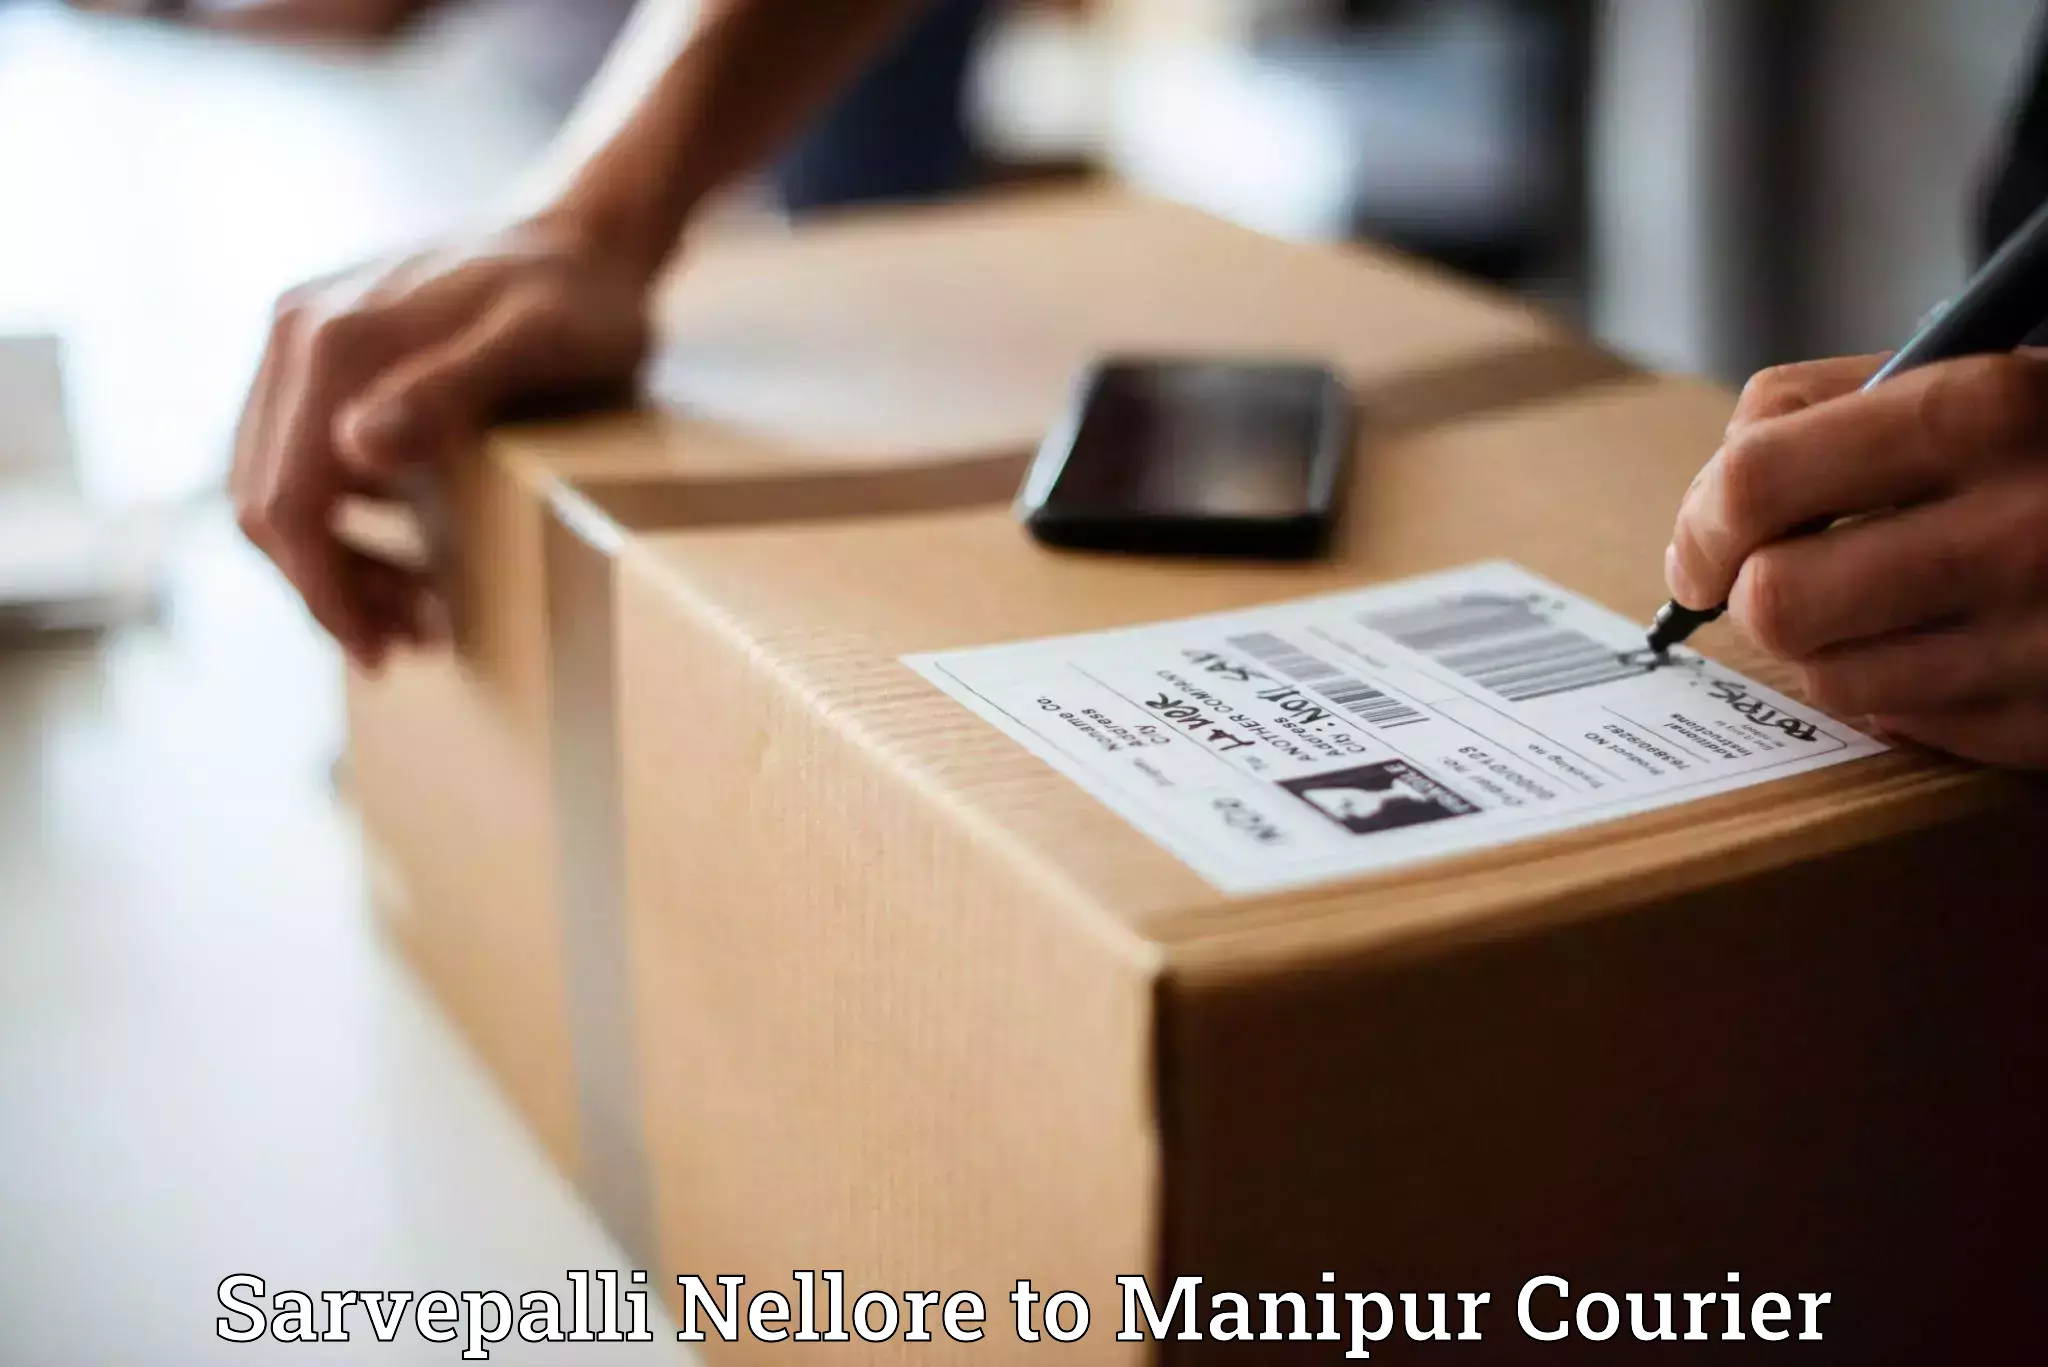 Domestic courier Sarvepalli Nellore to Chandel